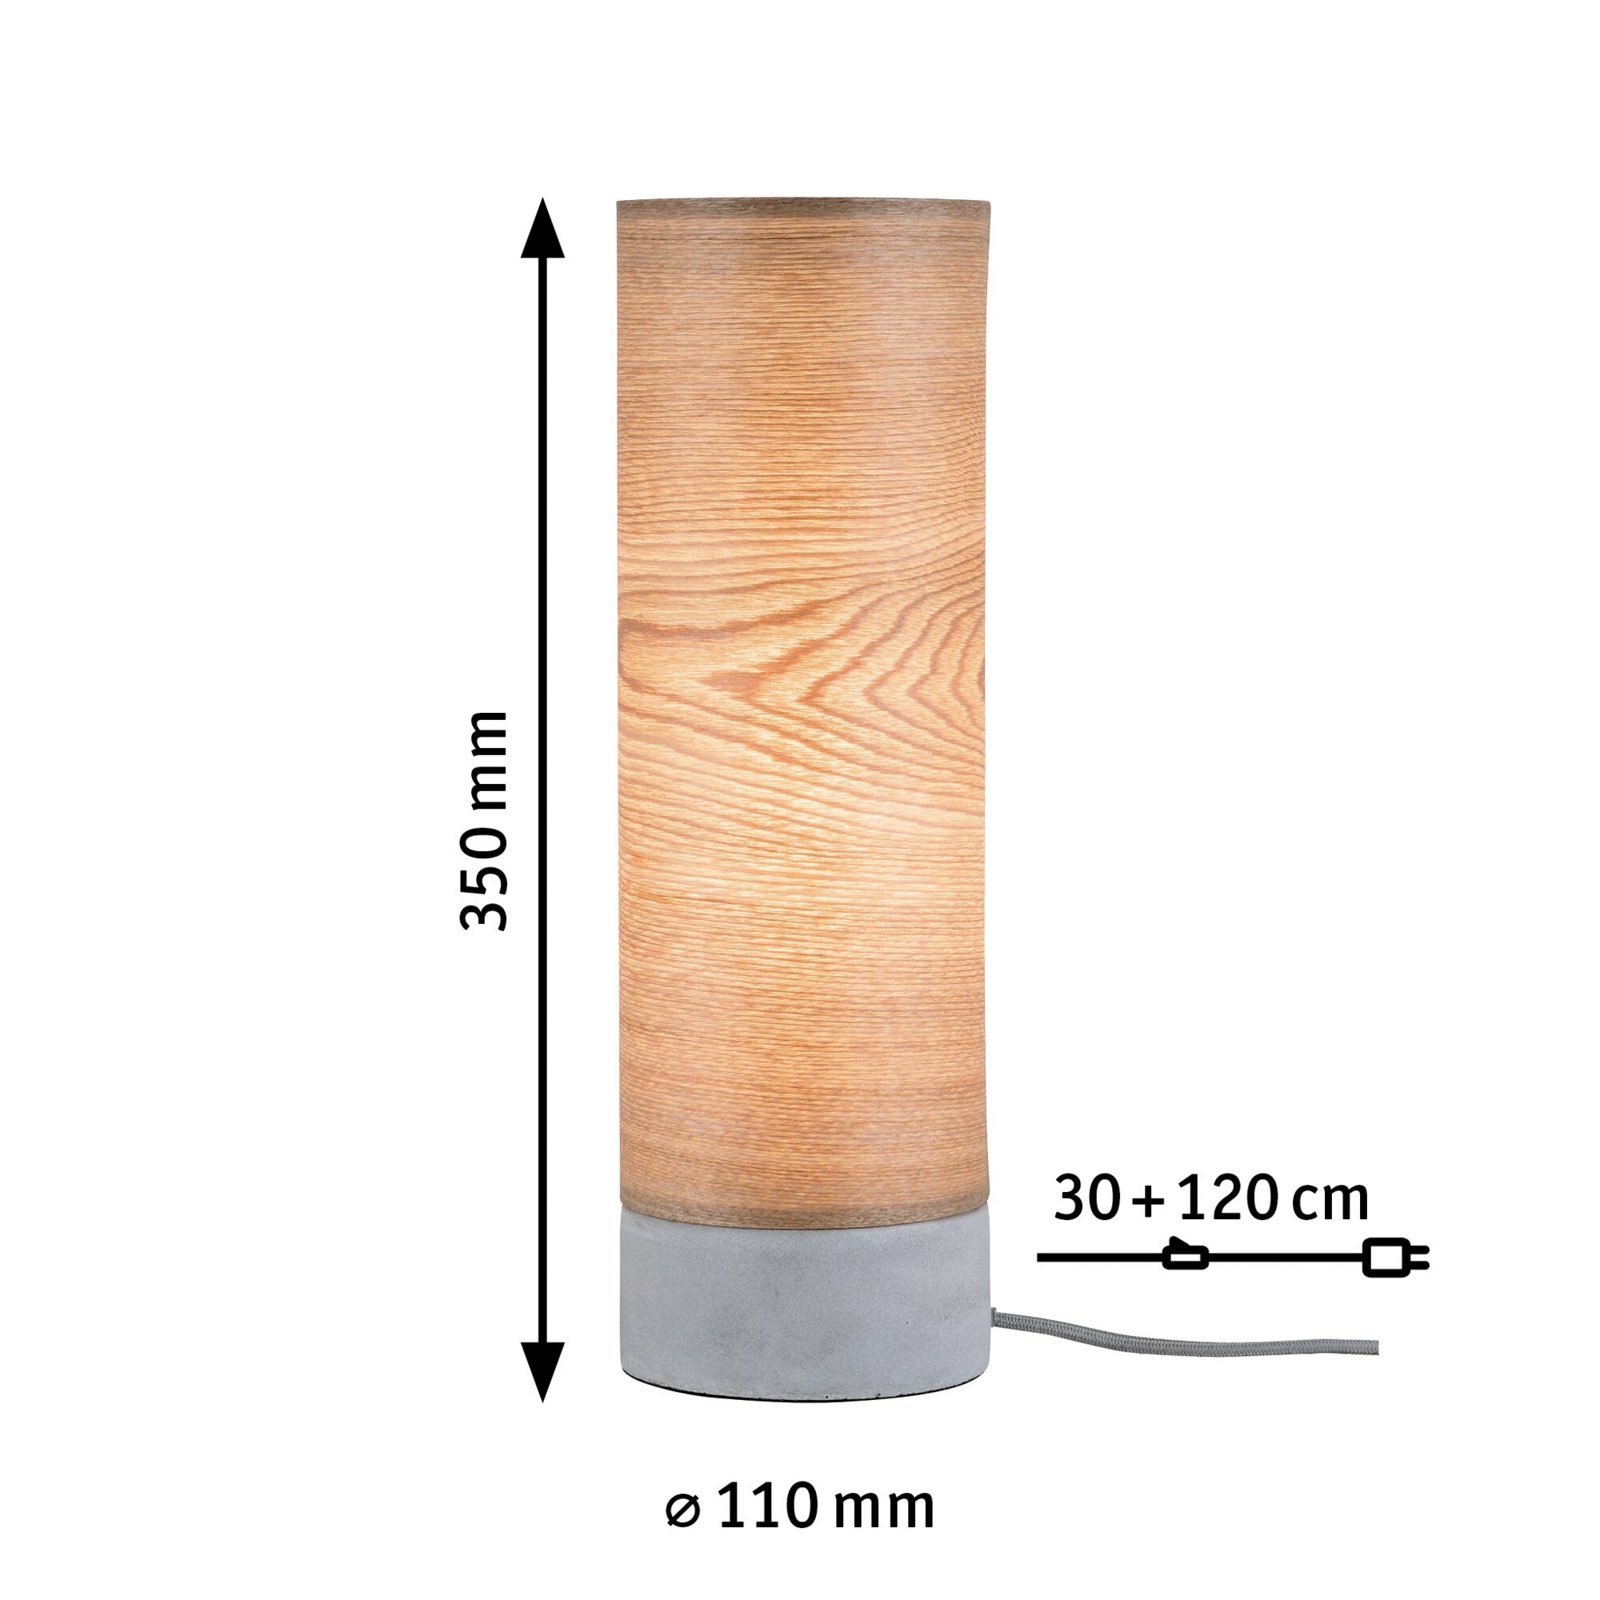 Cylindrisk bordslampa Skadi i trä med betongfot